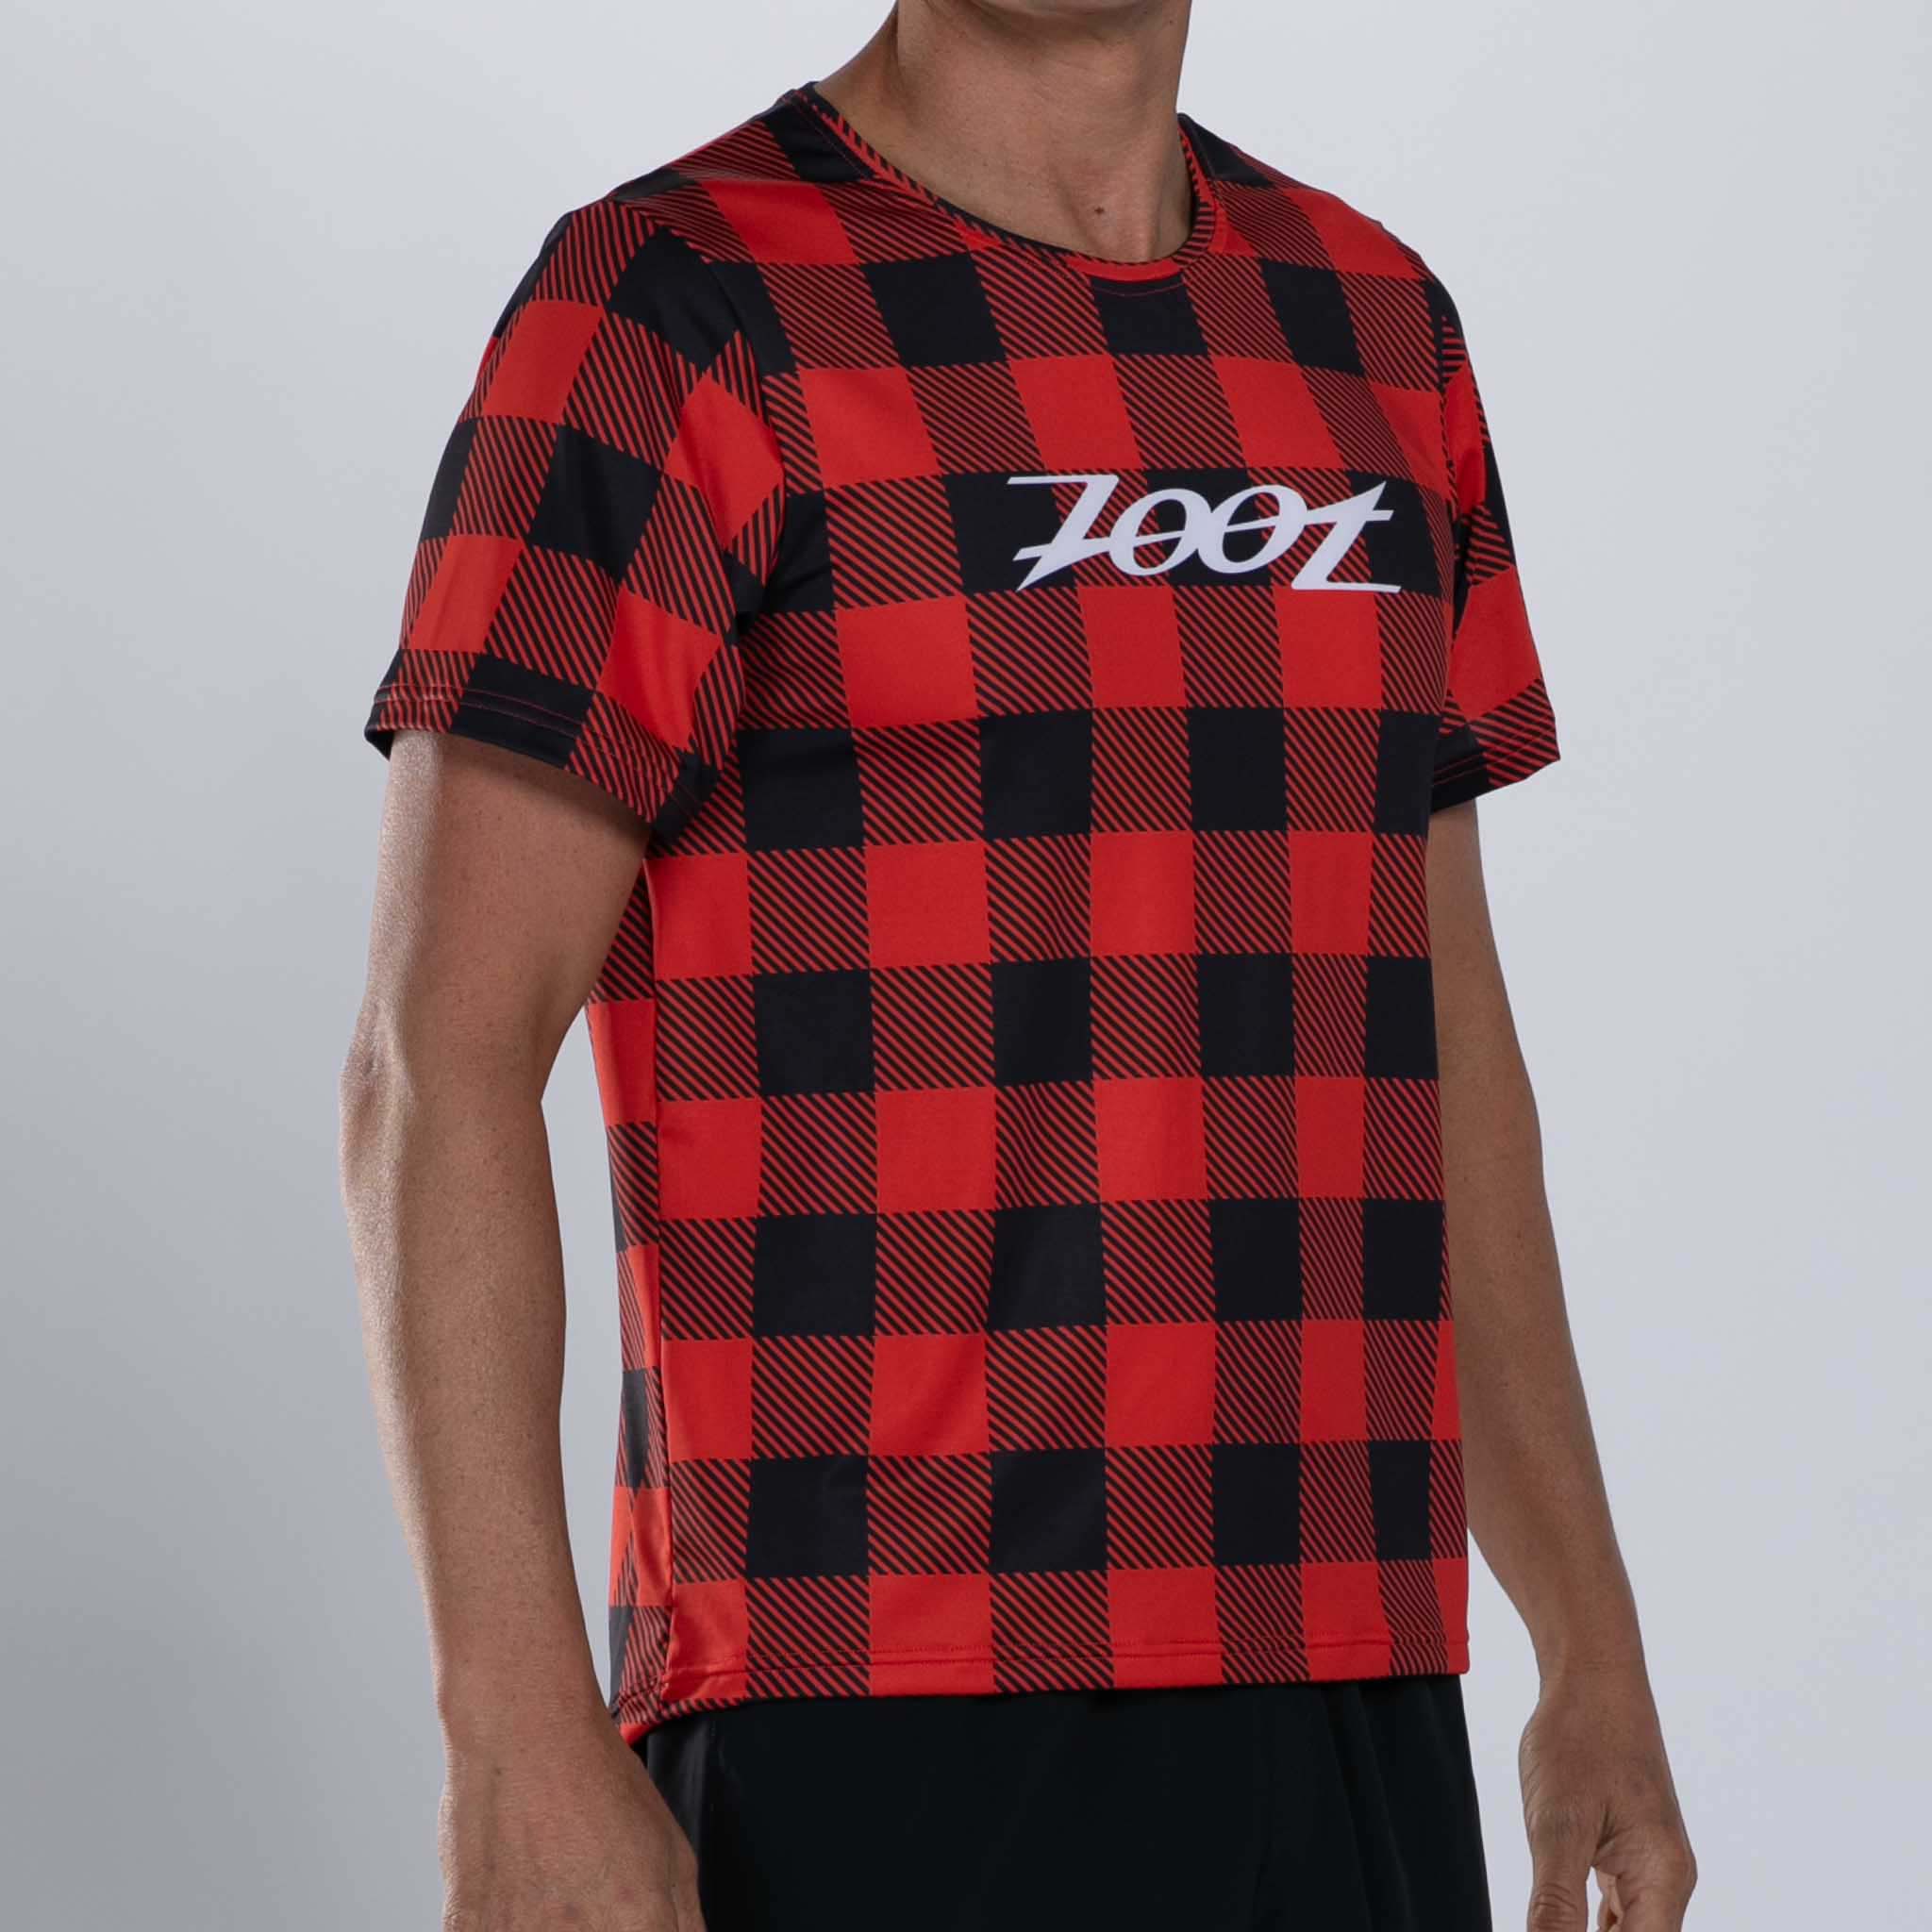 Zoot Sports RUN TEE Men's Ltd Run Tee - Lumberjack